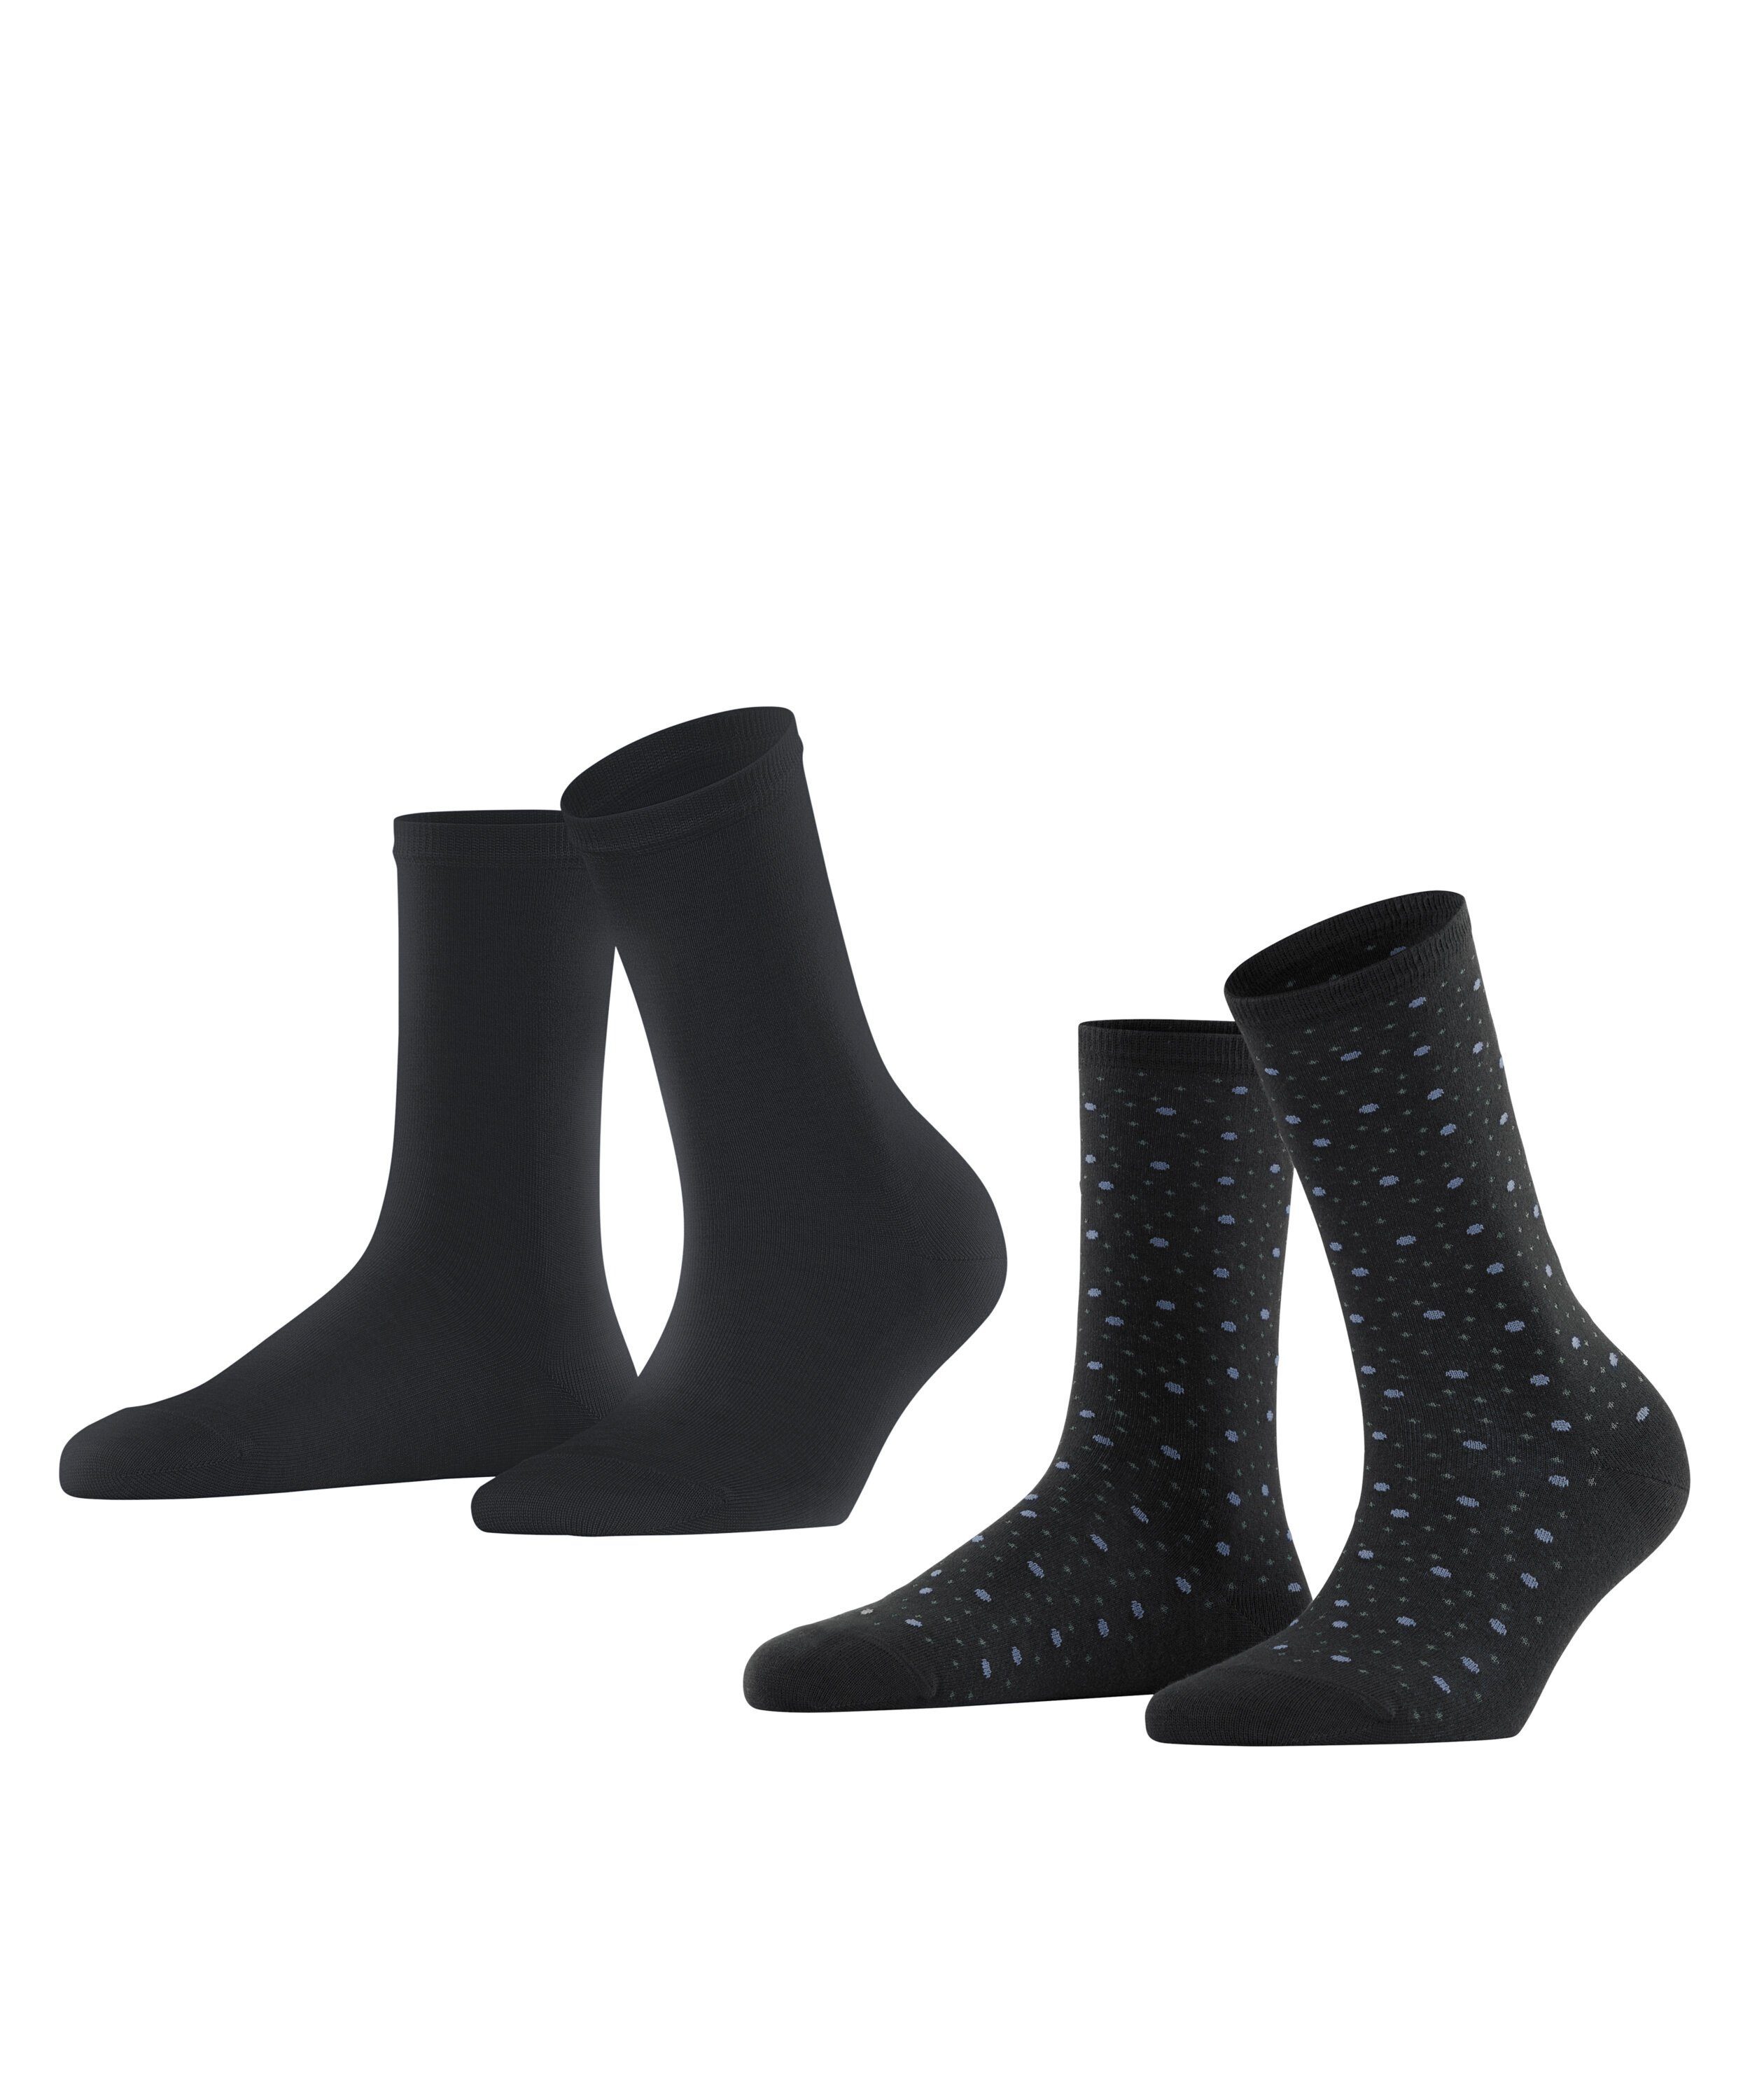 Socken Playful Dot Esprit black (3000) 2-Pack (2-Paar)